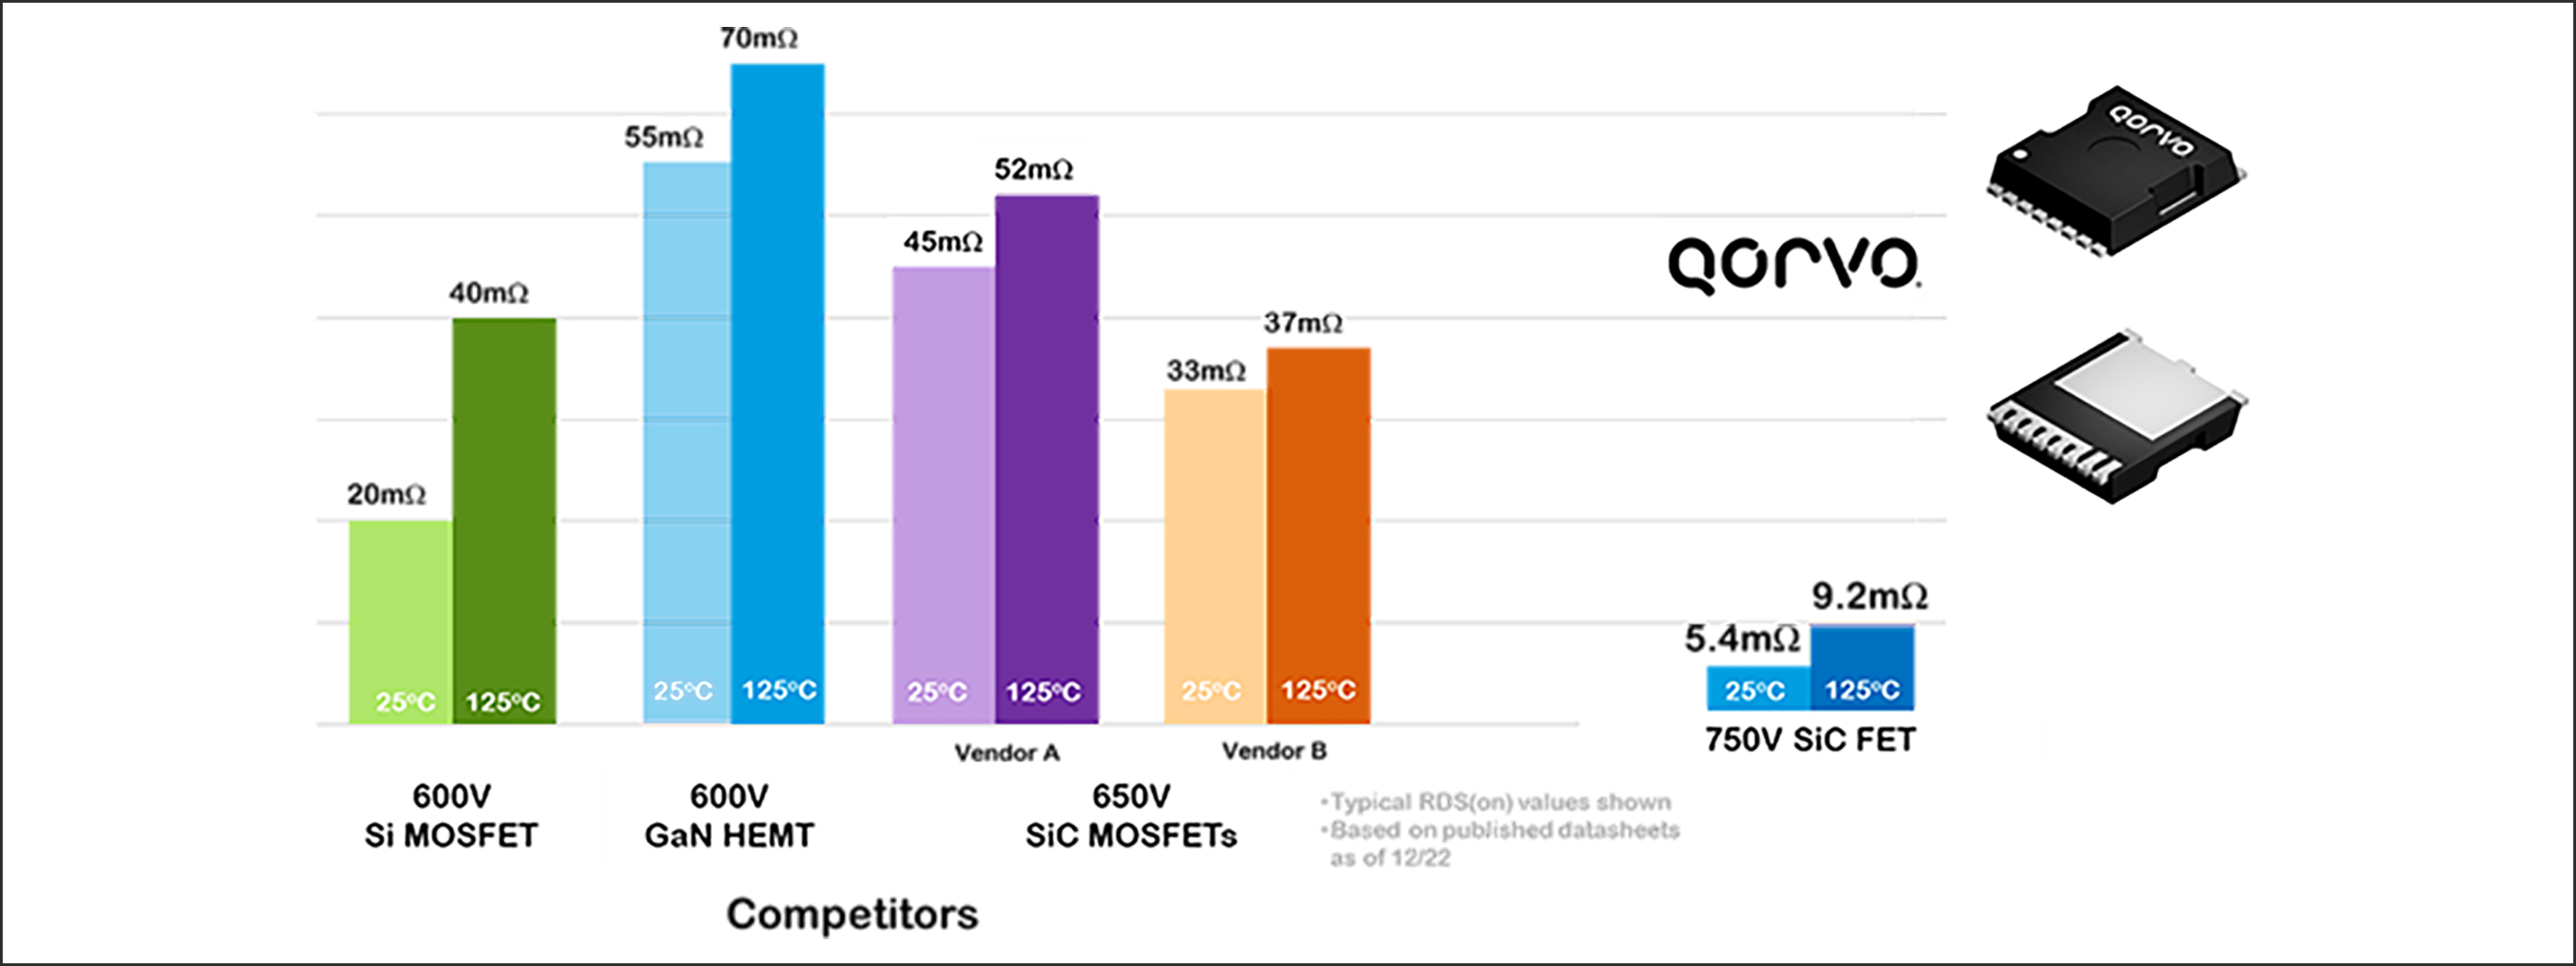 図1. 600V以上の低オン抵抗FETにおける表面実装型TOLLパッケージの各社比較